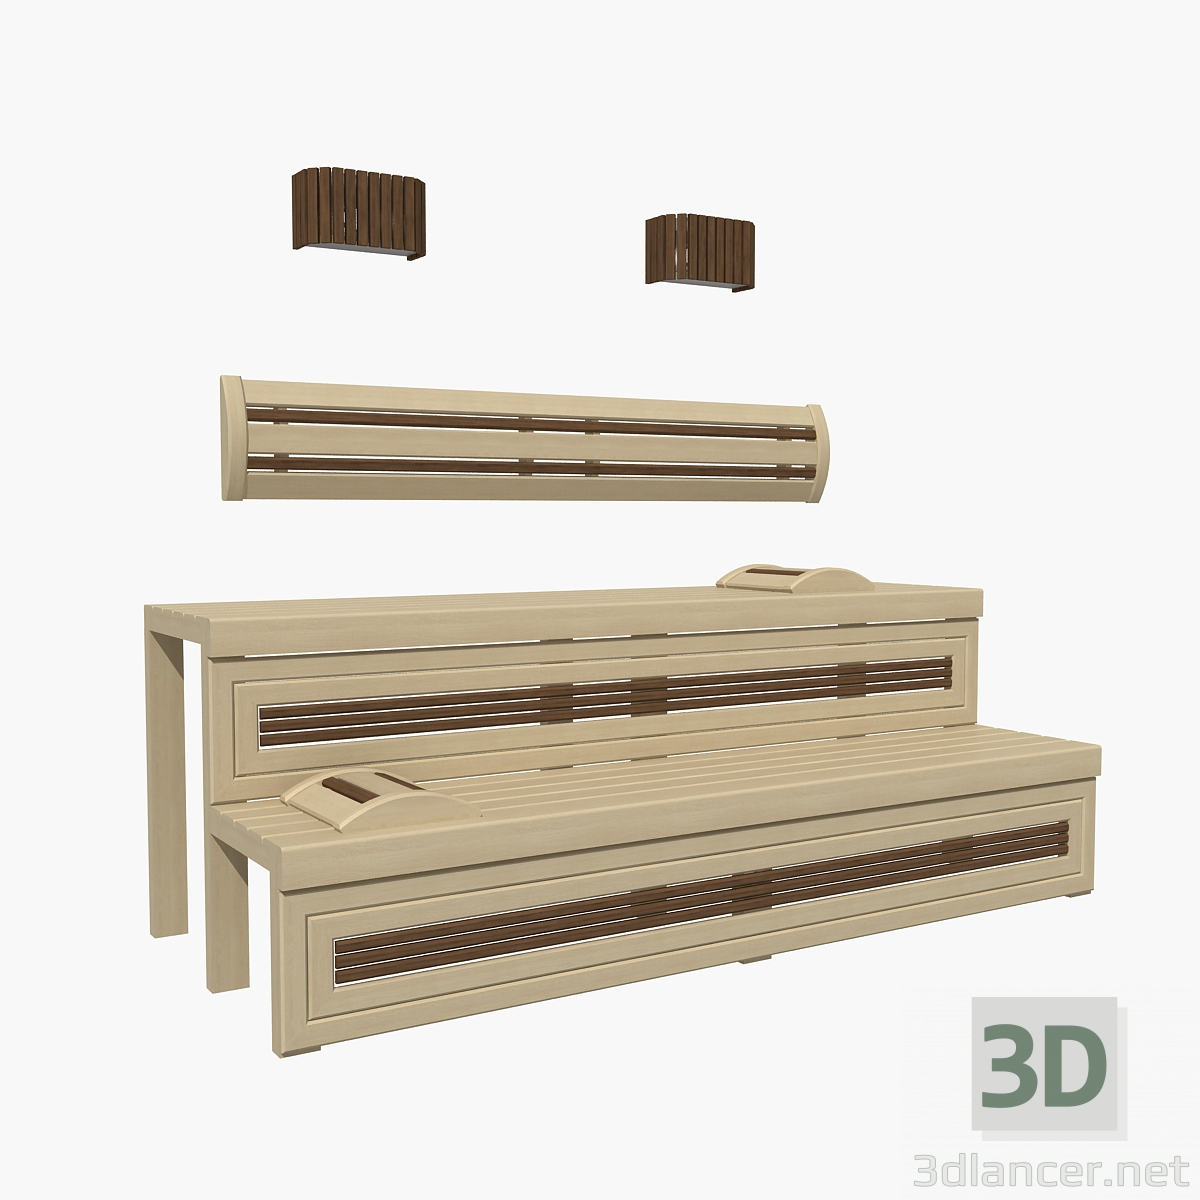 Banco de sauna 01 3D modelo Compro - render